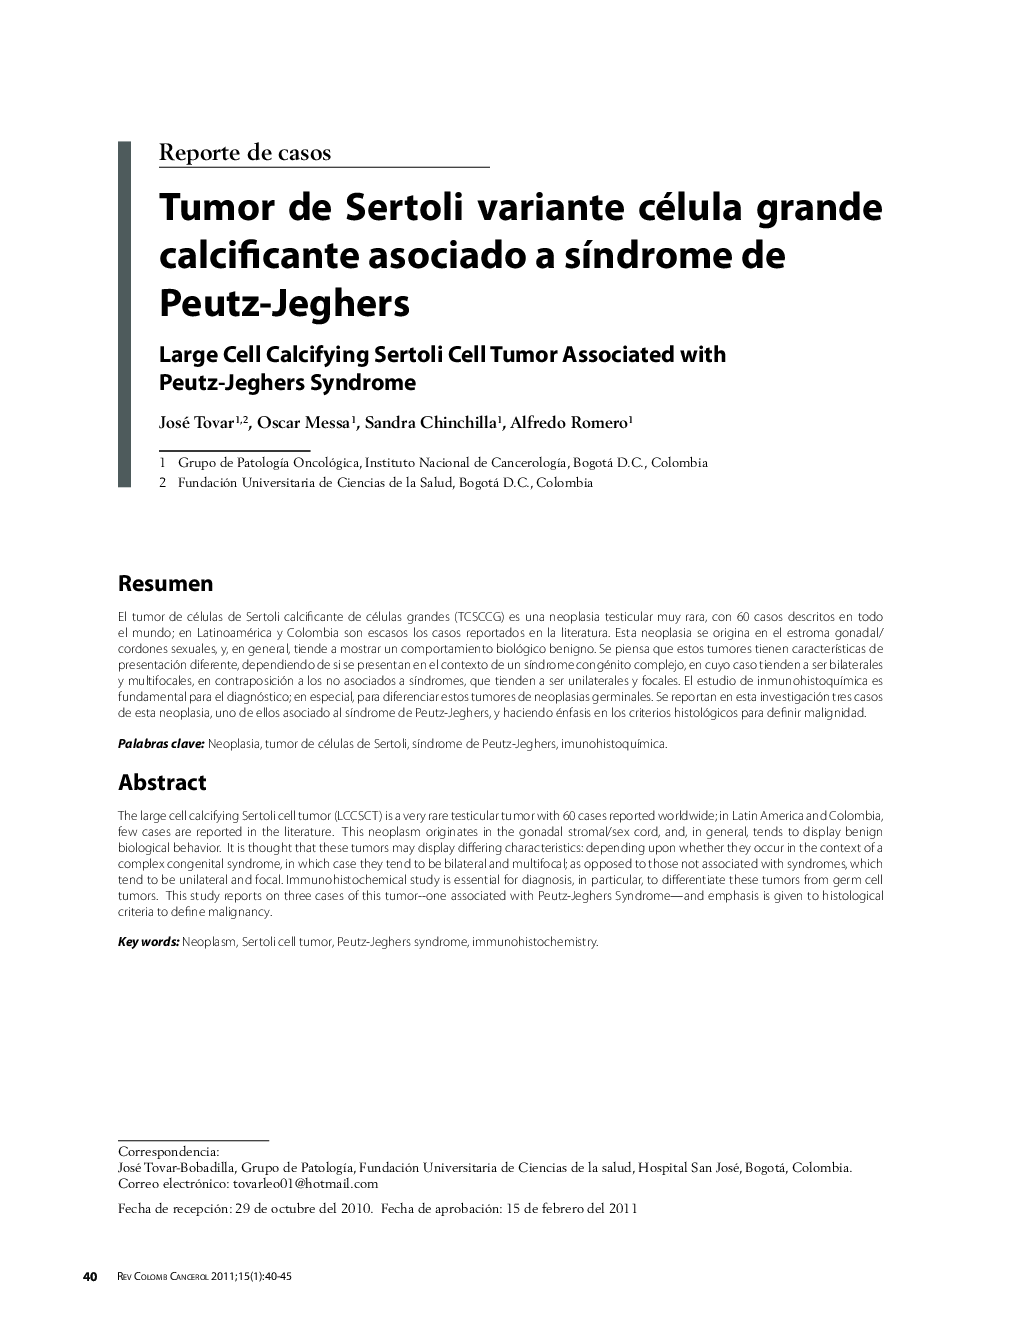 Tumor de Sertoli variante célula grande calcificante asociado a sÃ­ndrome de Peutz-JeghersLarge Cell Calcifying Sertoli Cell Tumor Associated with Peutz-Jeghers Syndrome